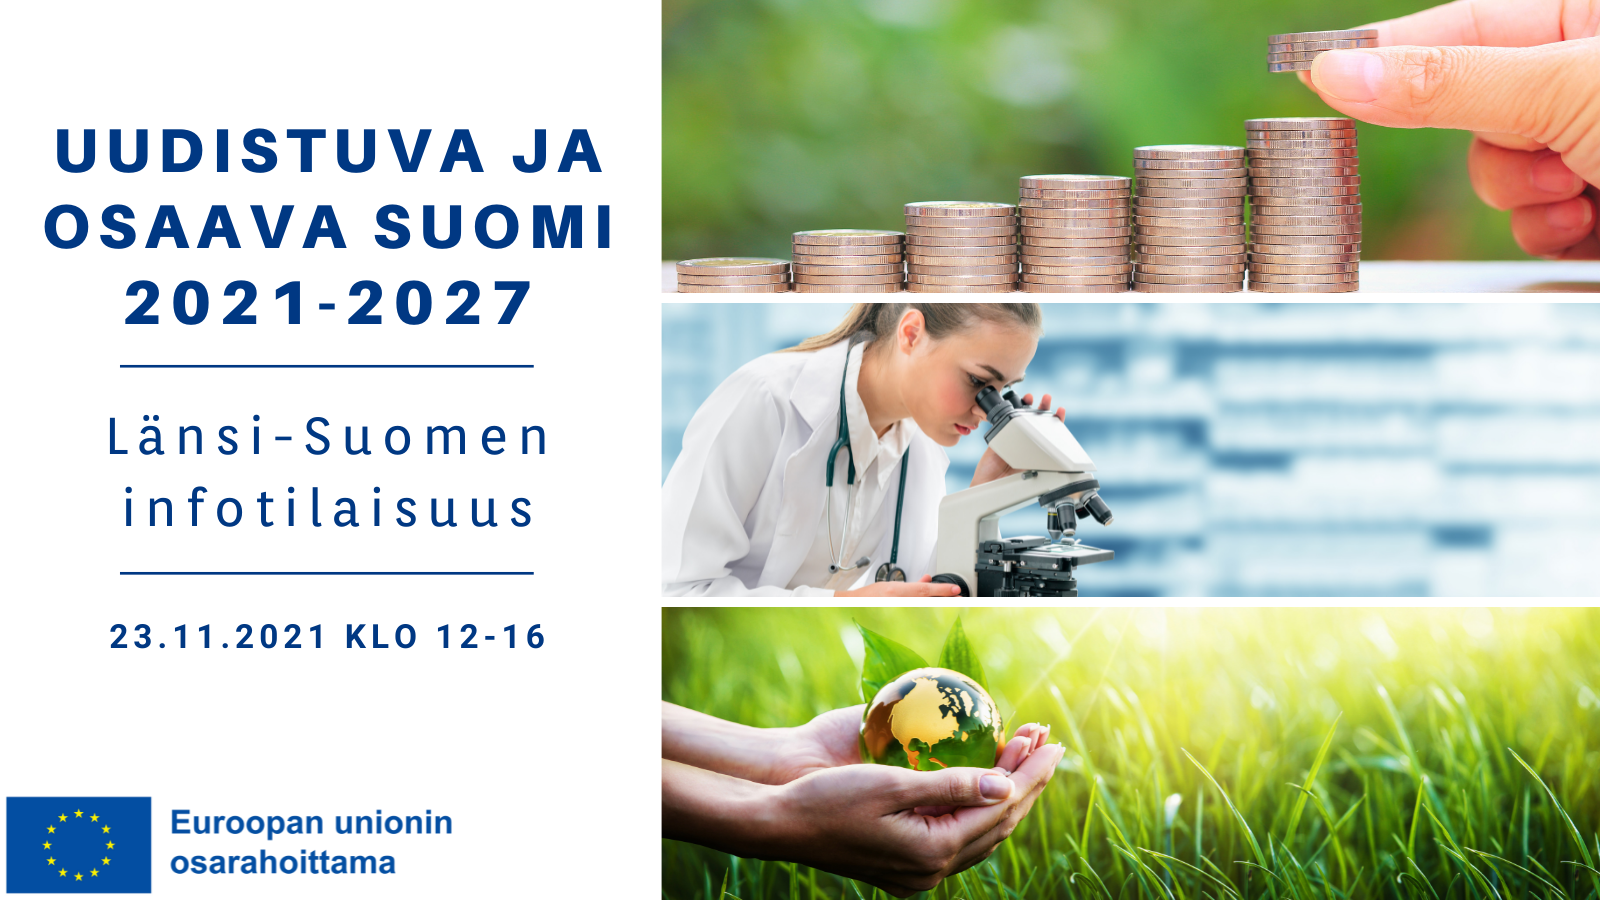 Uudistuva ja osaava Suomi 2021-2027. Länsi-Suomen infotilaisuus. 23.11.2021 klo 12-16. Logo: Euroopan unionin osarahoittama.